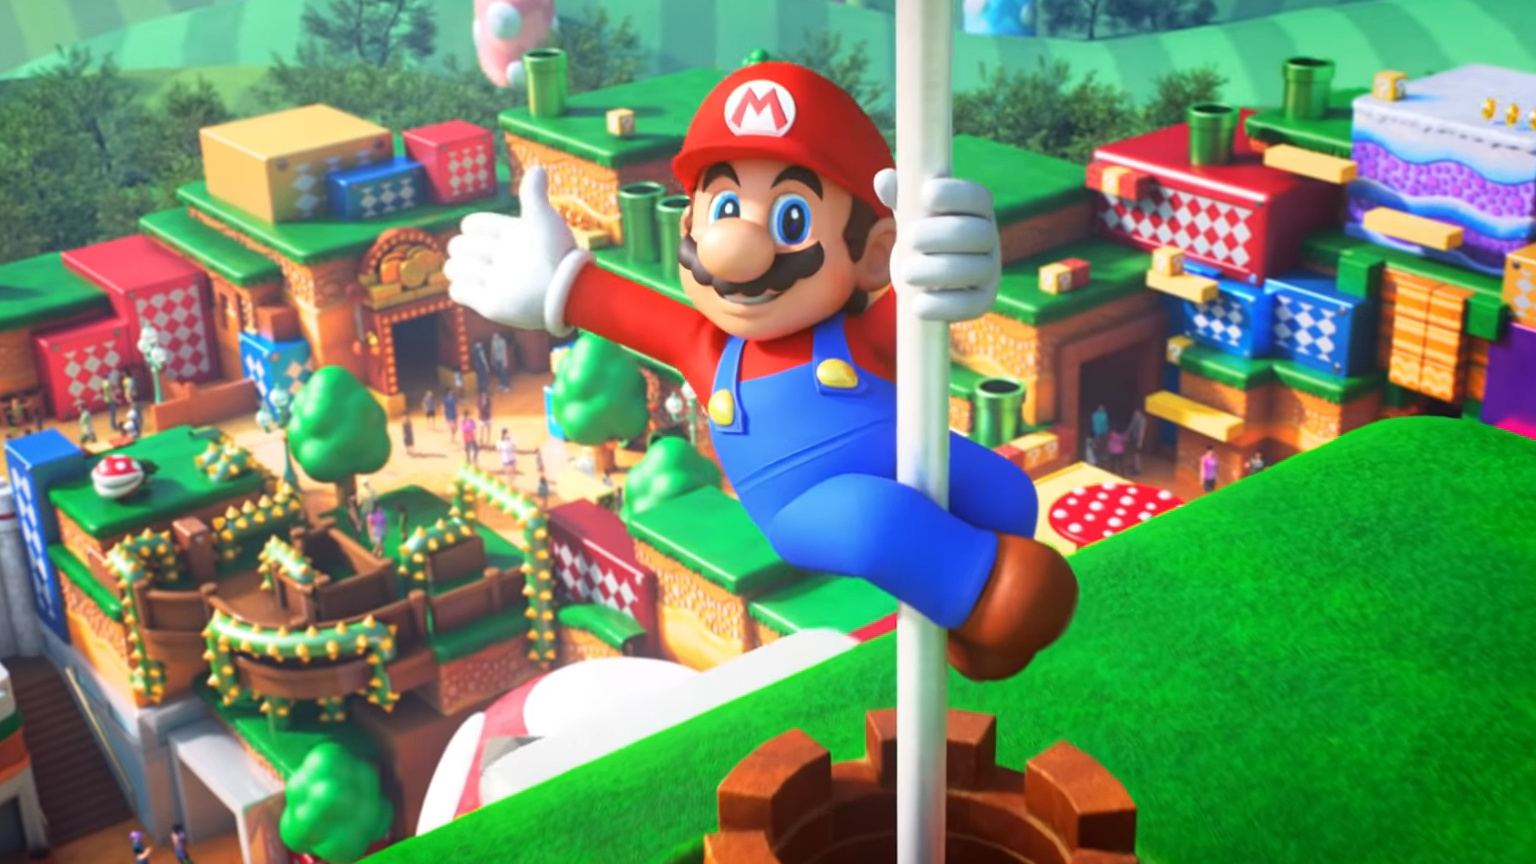 Giappone: il primo parco giochi dedicato a Super Mario